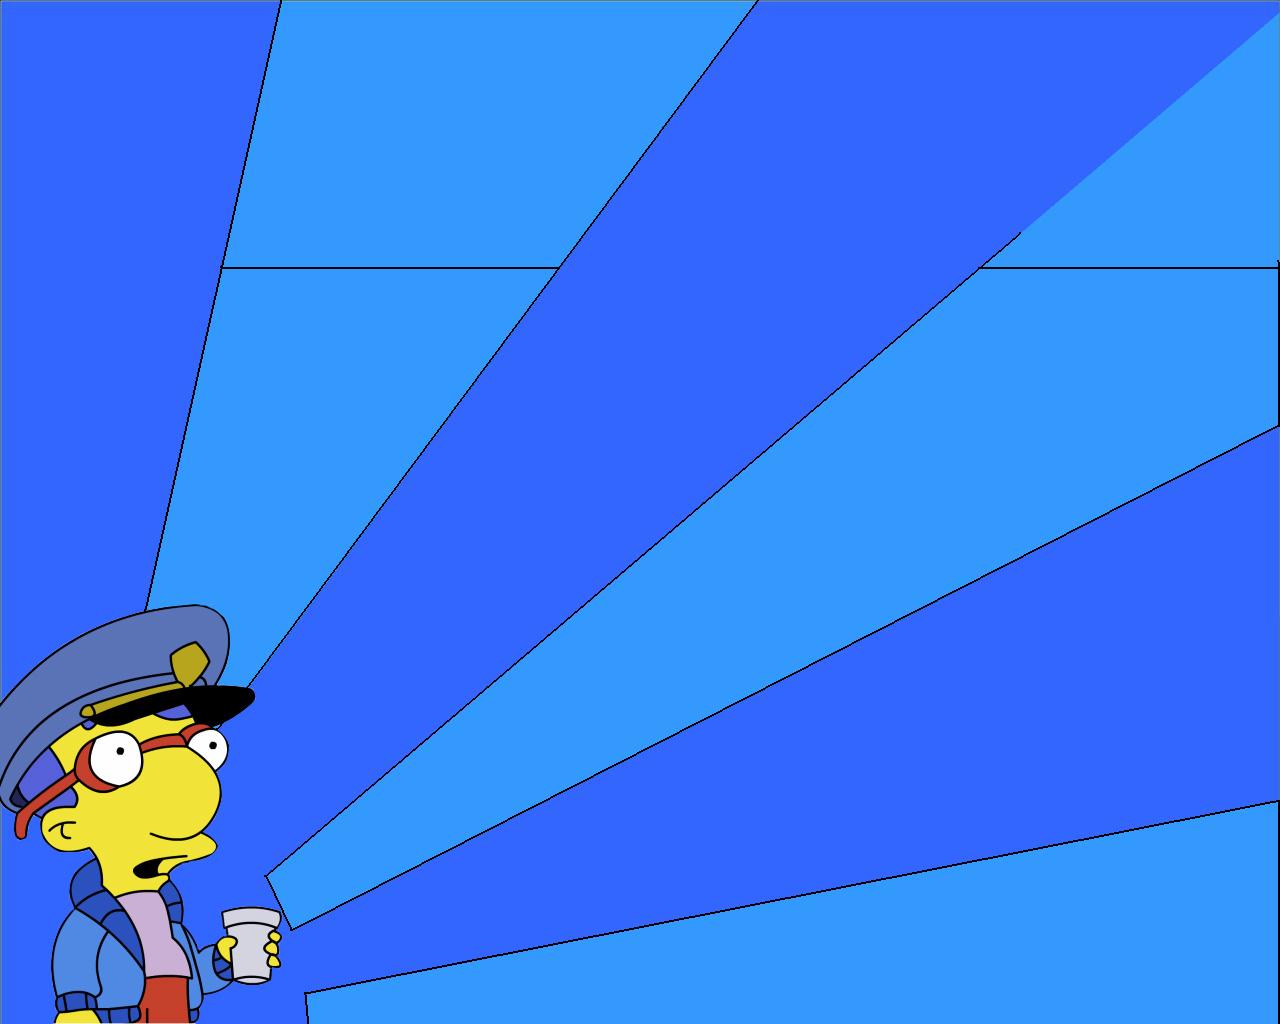 General 1280x1024 The Simpsons Milhouse Van Houten police blue TV series